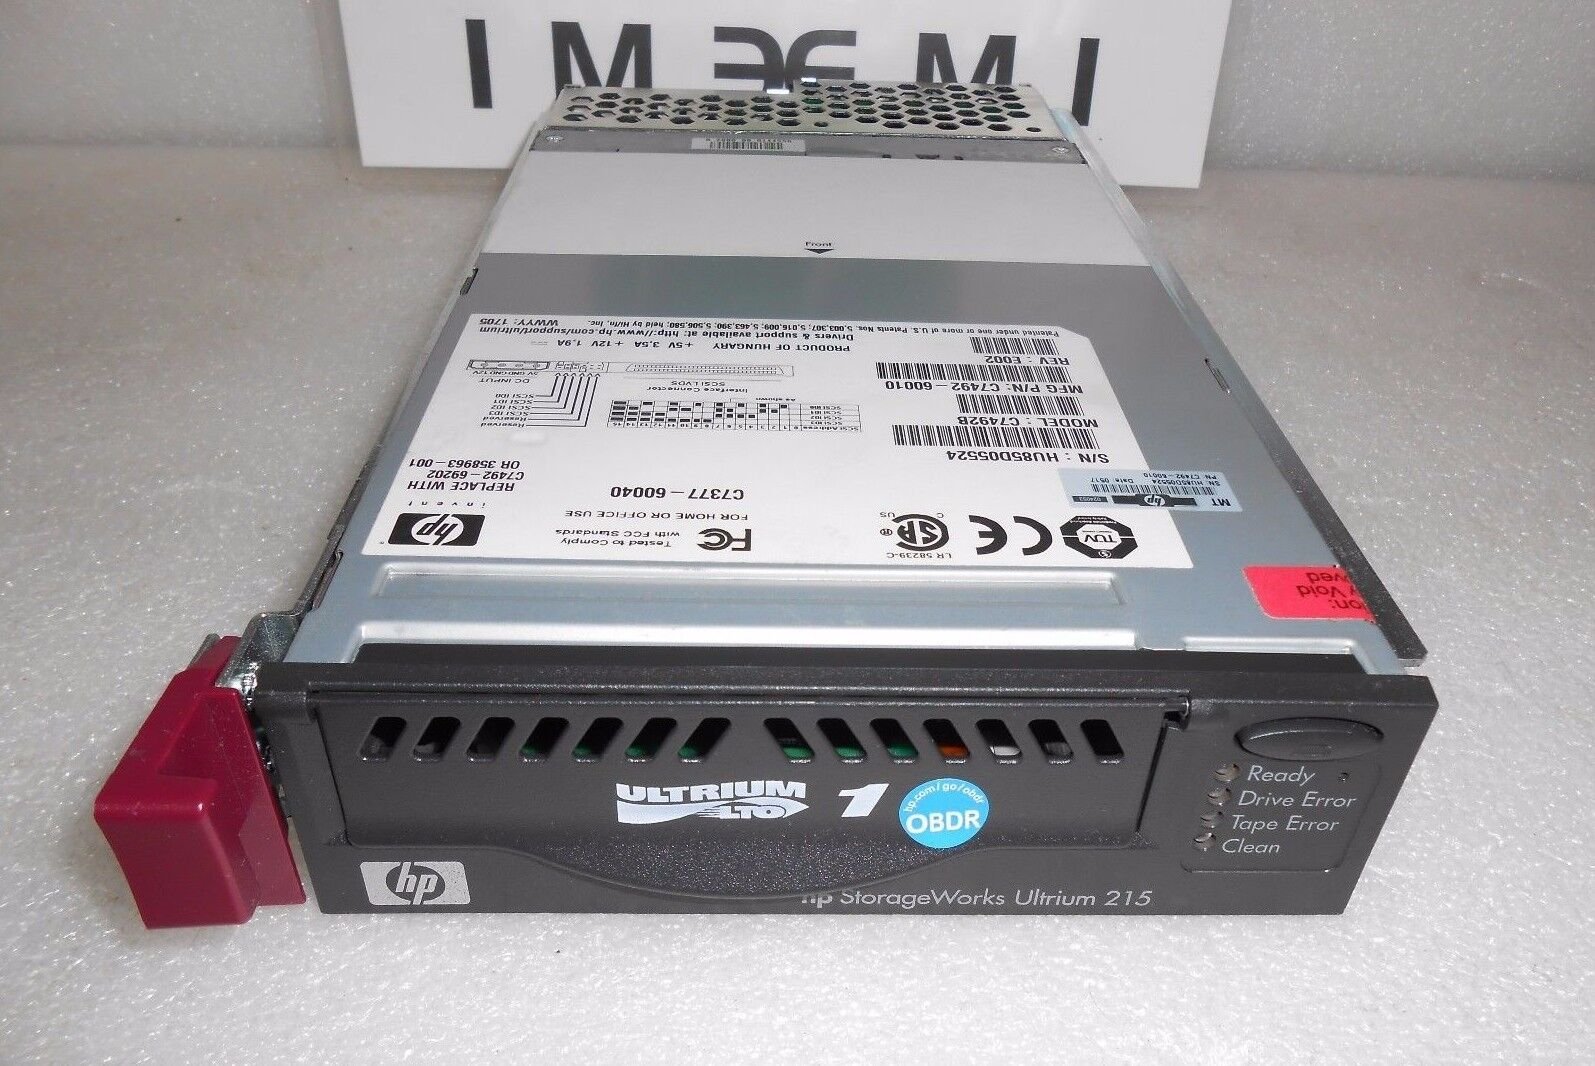 HP C7492B  C7492-69202  358963-001 100/200GB SureStore 215M linear tape drive.